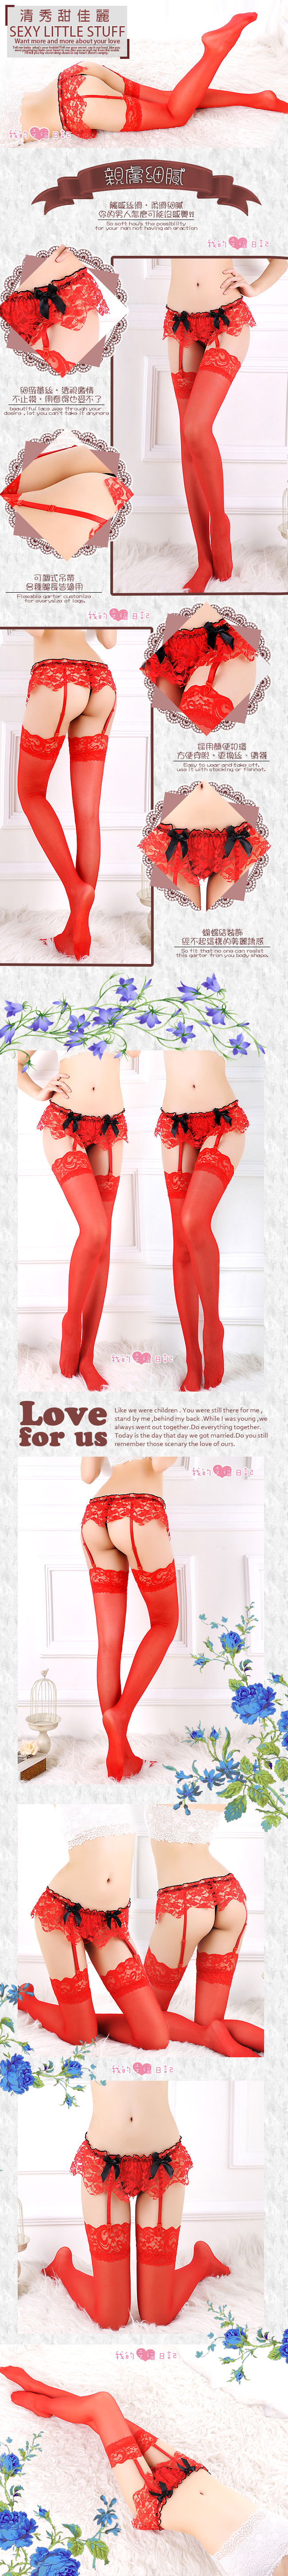 雅緻美人‧絲滑蕾絲吊襪帶+大腿蕾絲絲襪(紅)#JU-23160964